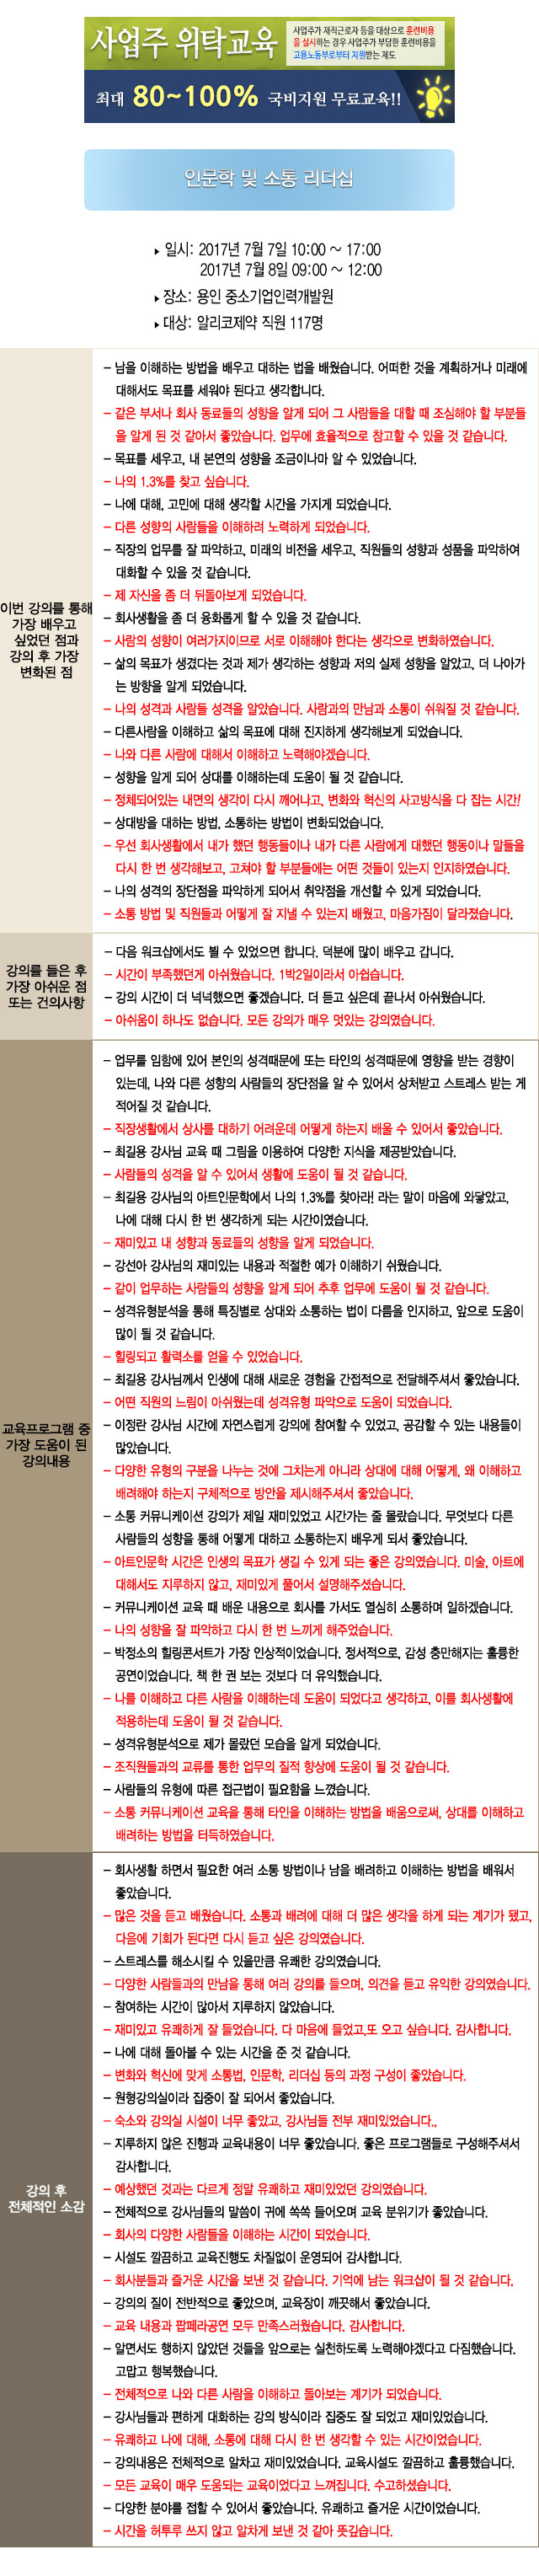 한국중앙인재개발원 후기 알리코제약.jpg